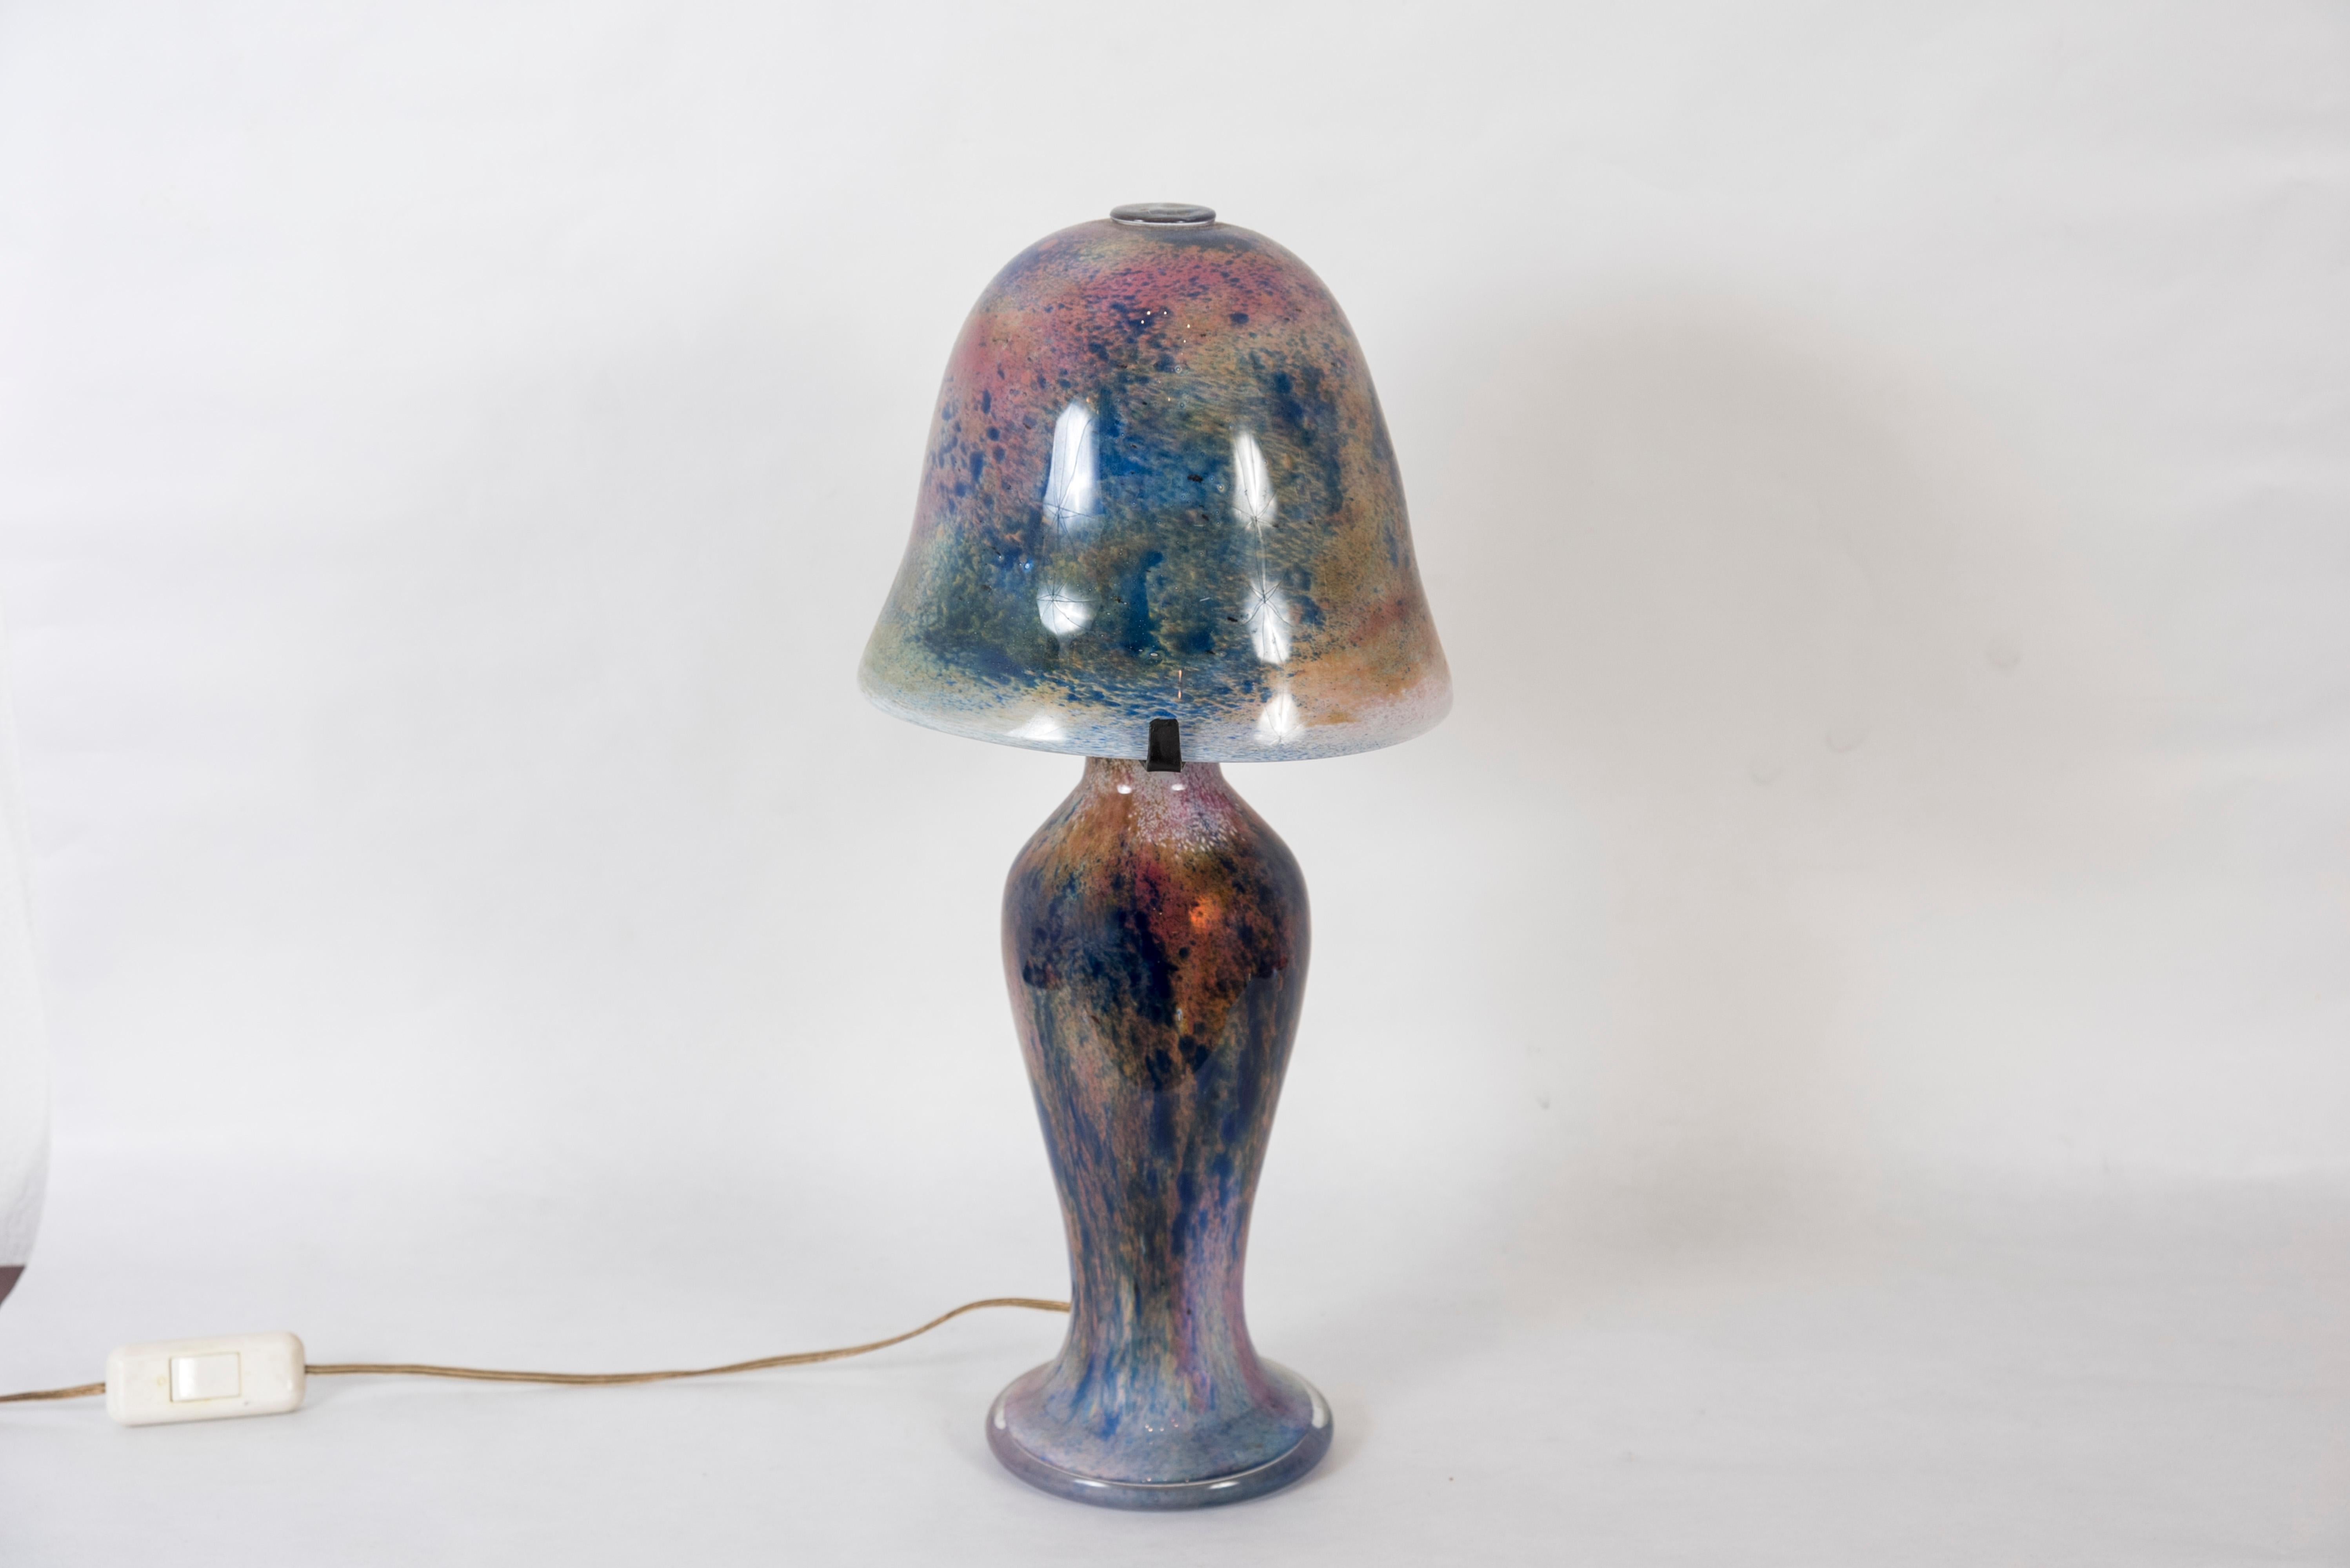 Murano glass lamp
1970
Italy.